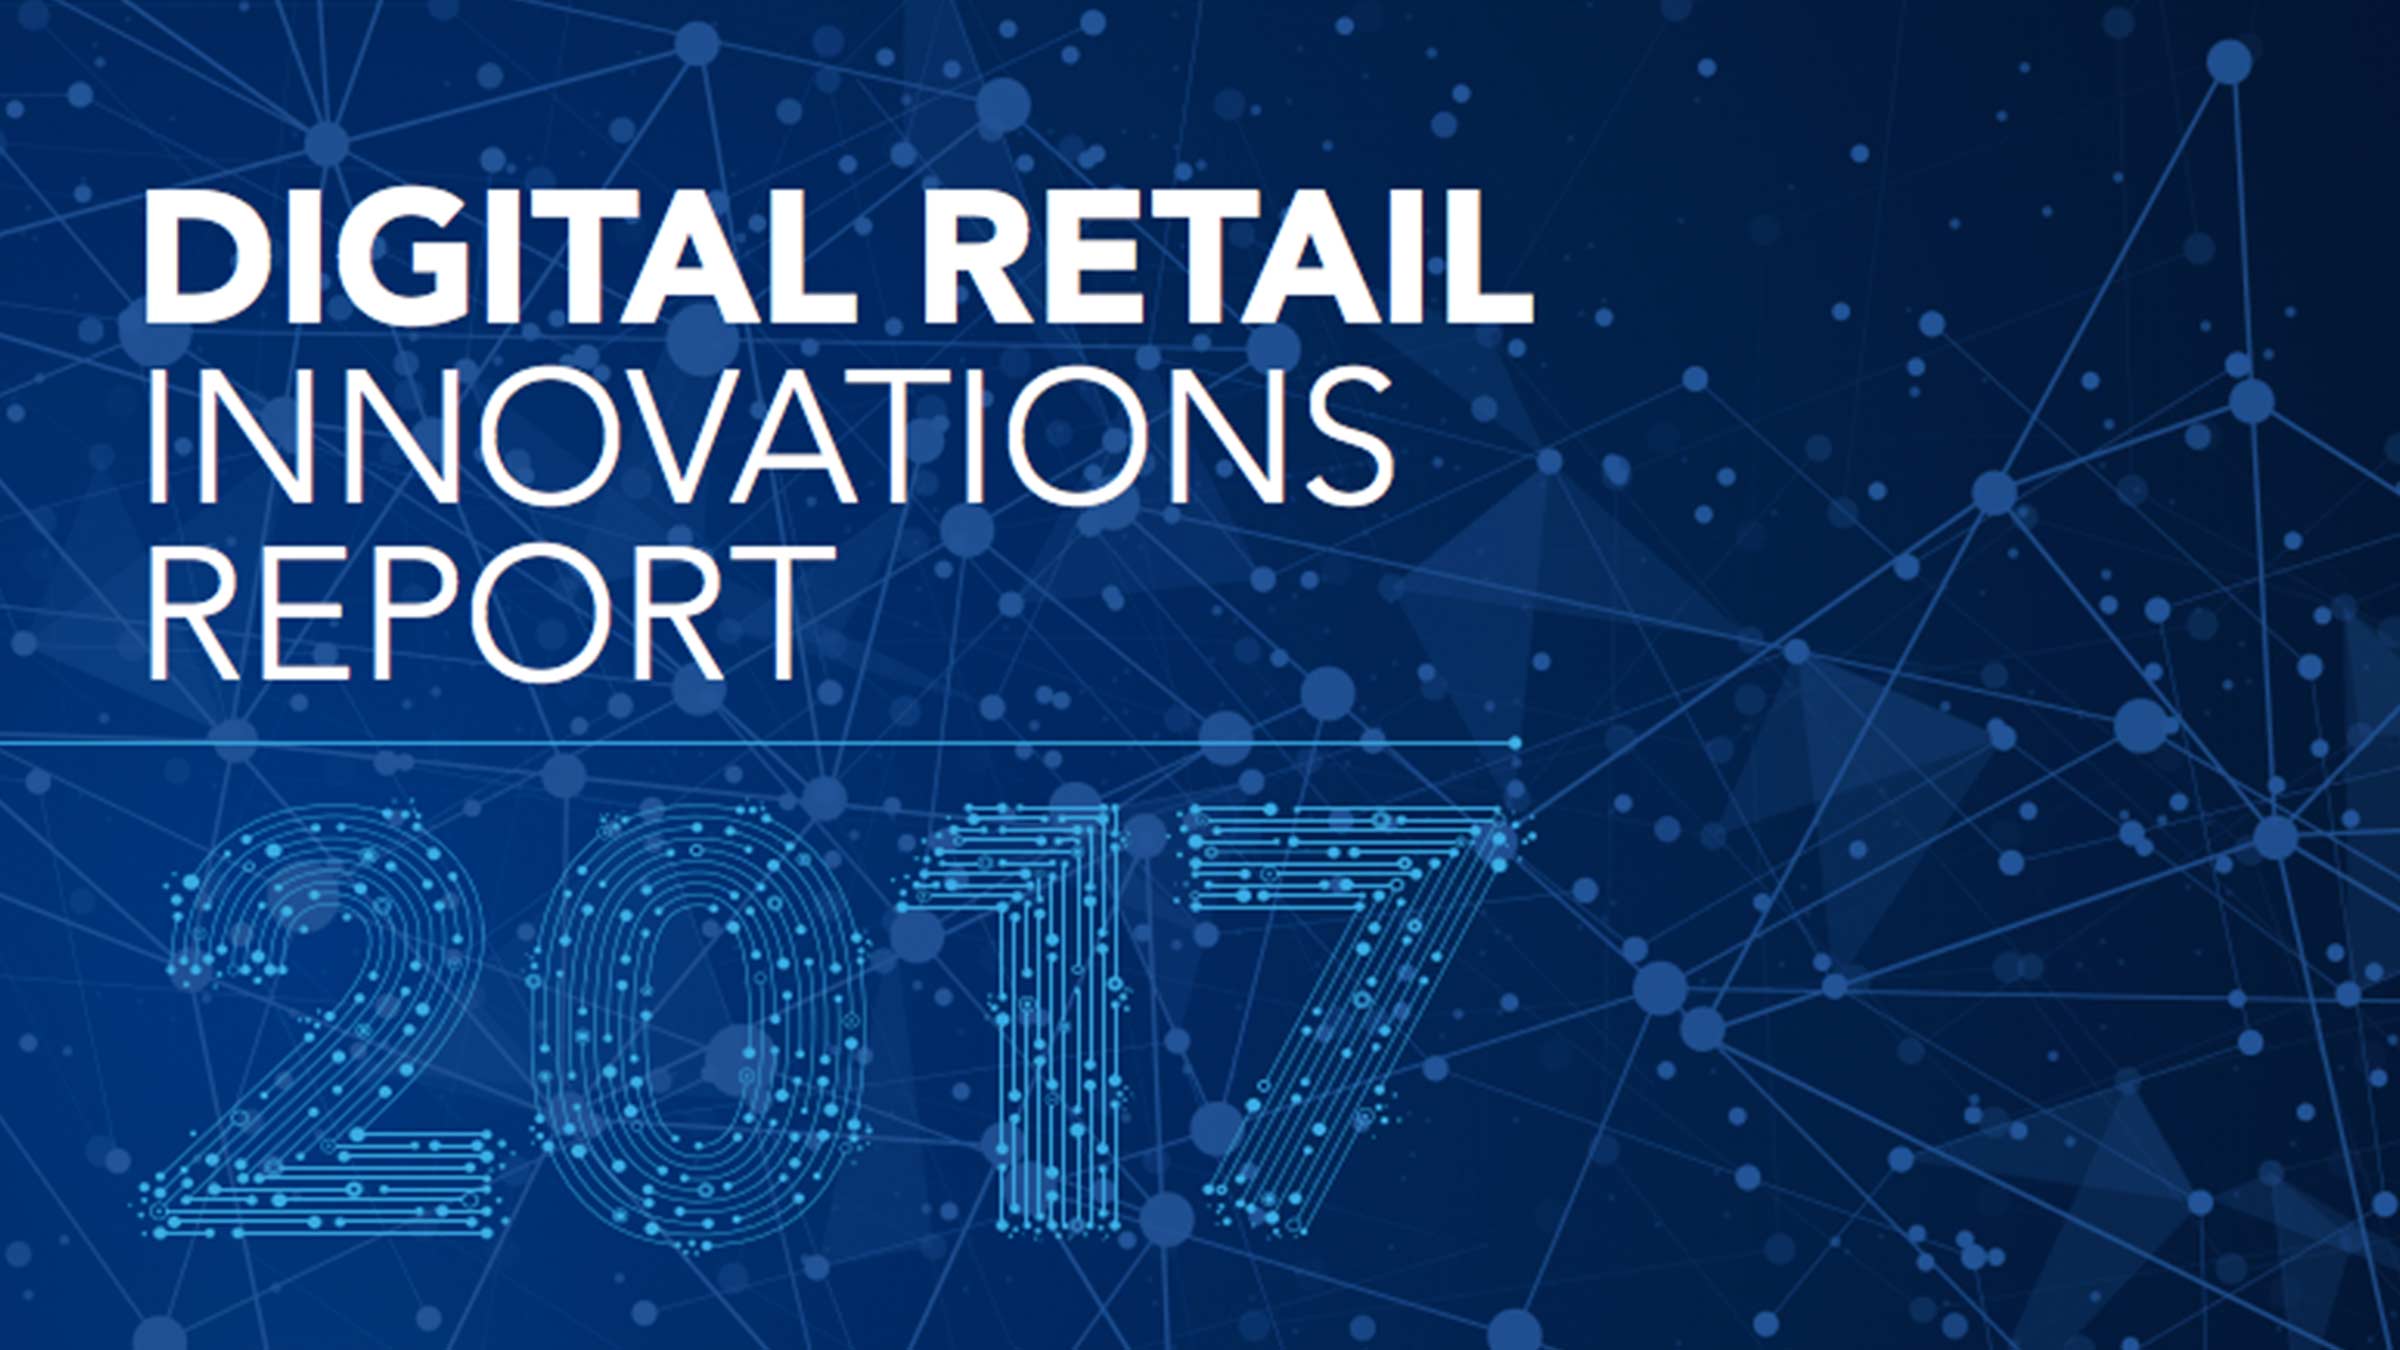 Digital Retail Innovations Report 2017